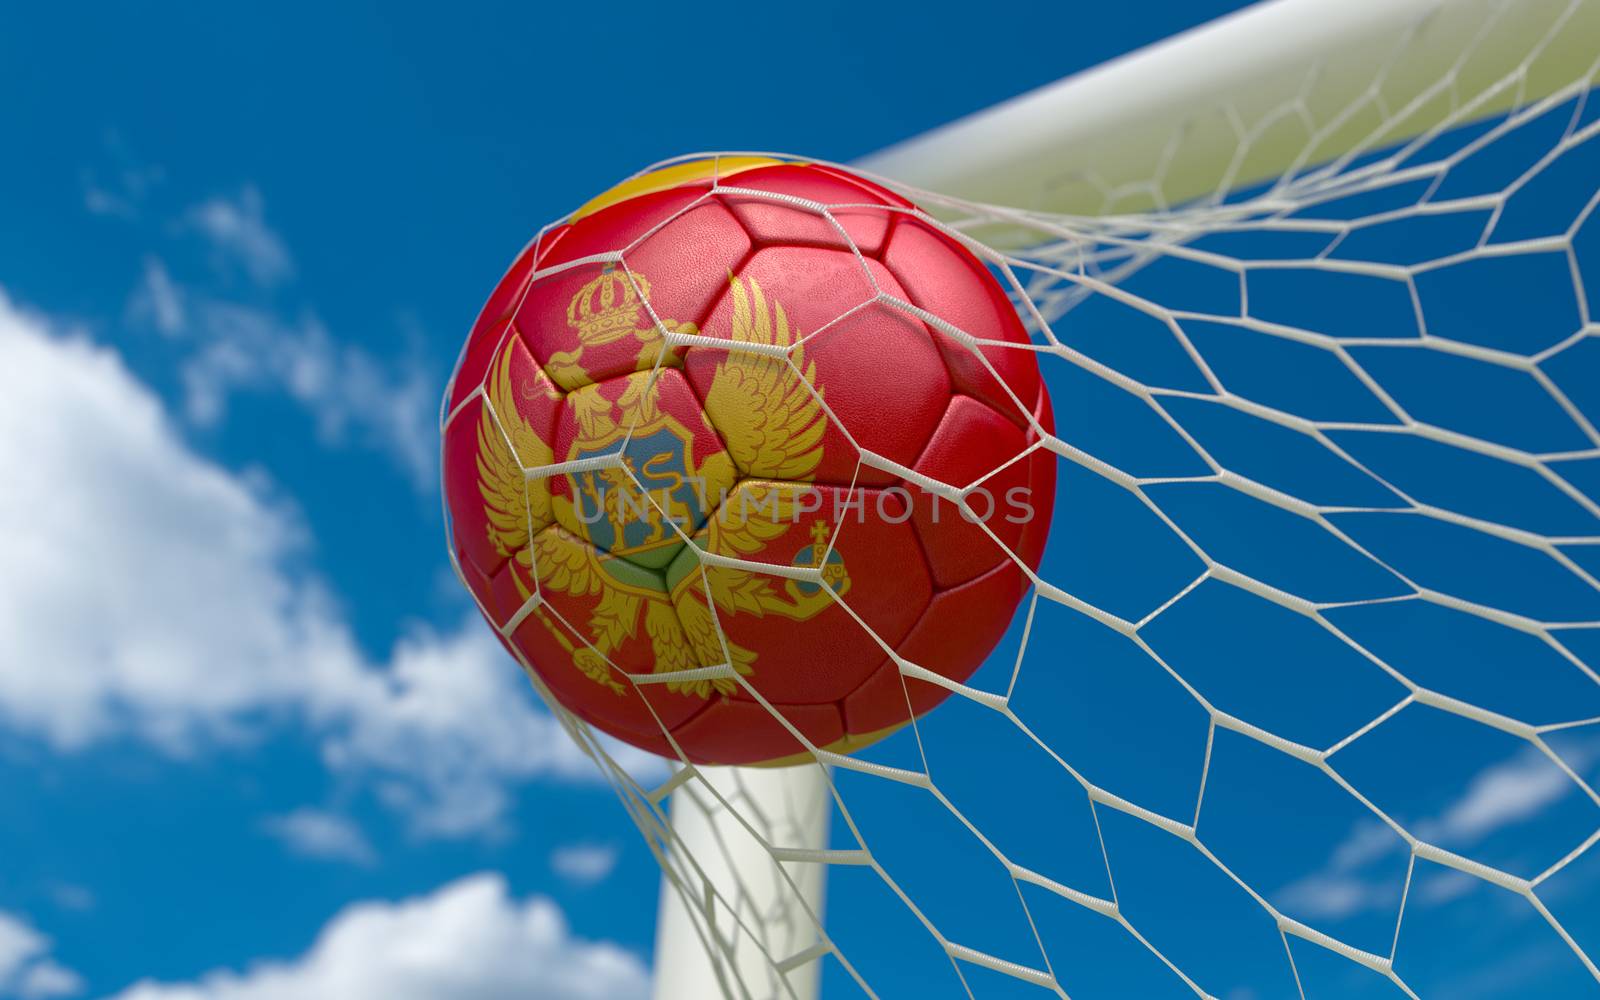 Montenegro flag and soccer ball, football in goal net